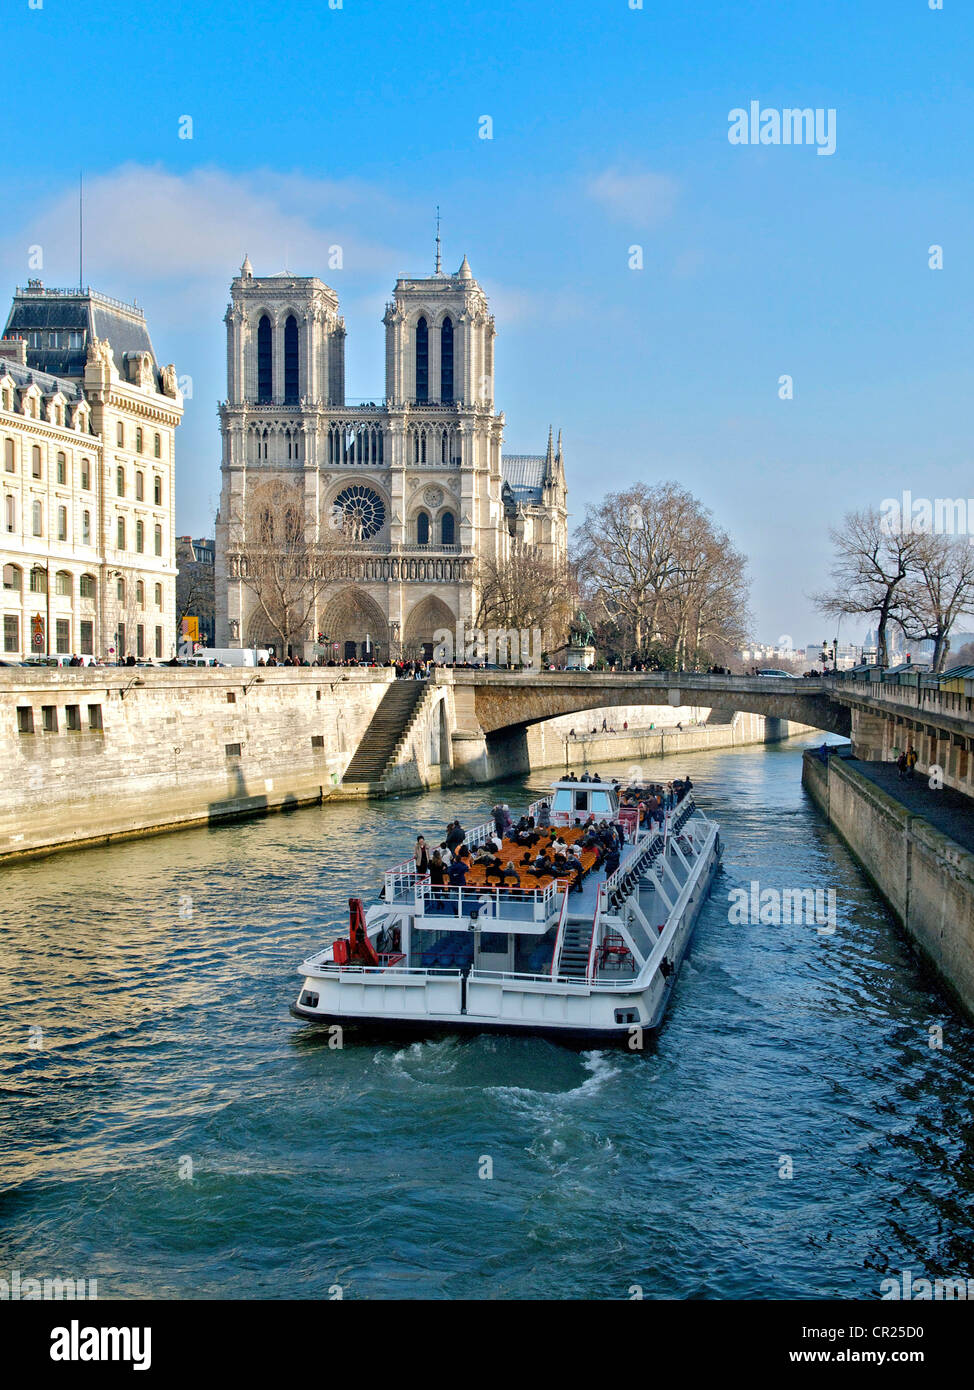 La cathédrale Notre Dame et le plaisir bateau de croisière sur la Seine, Paris, France, Europe Banque D'Images